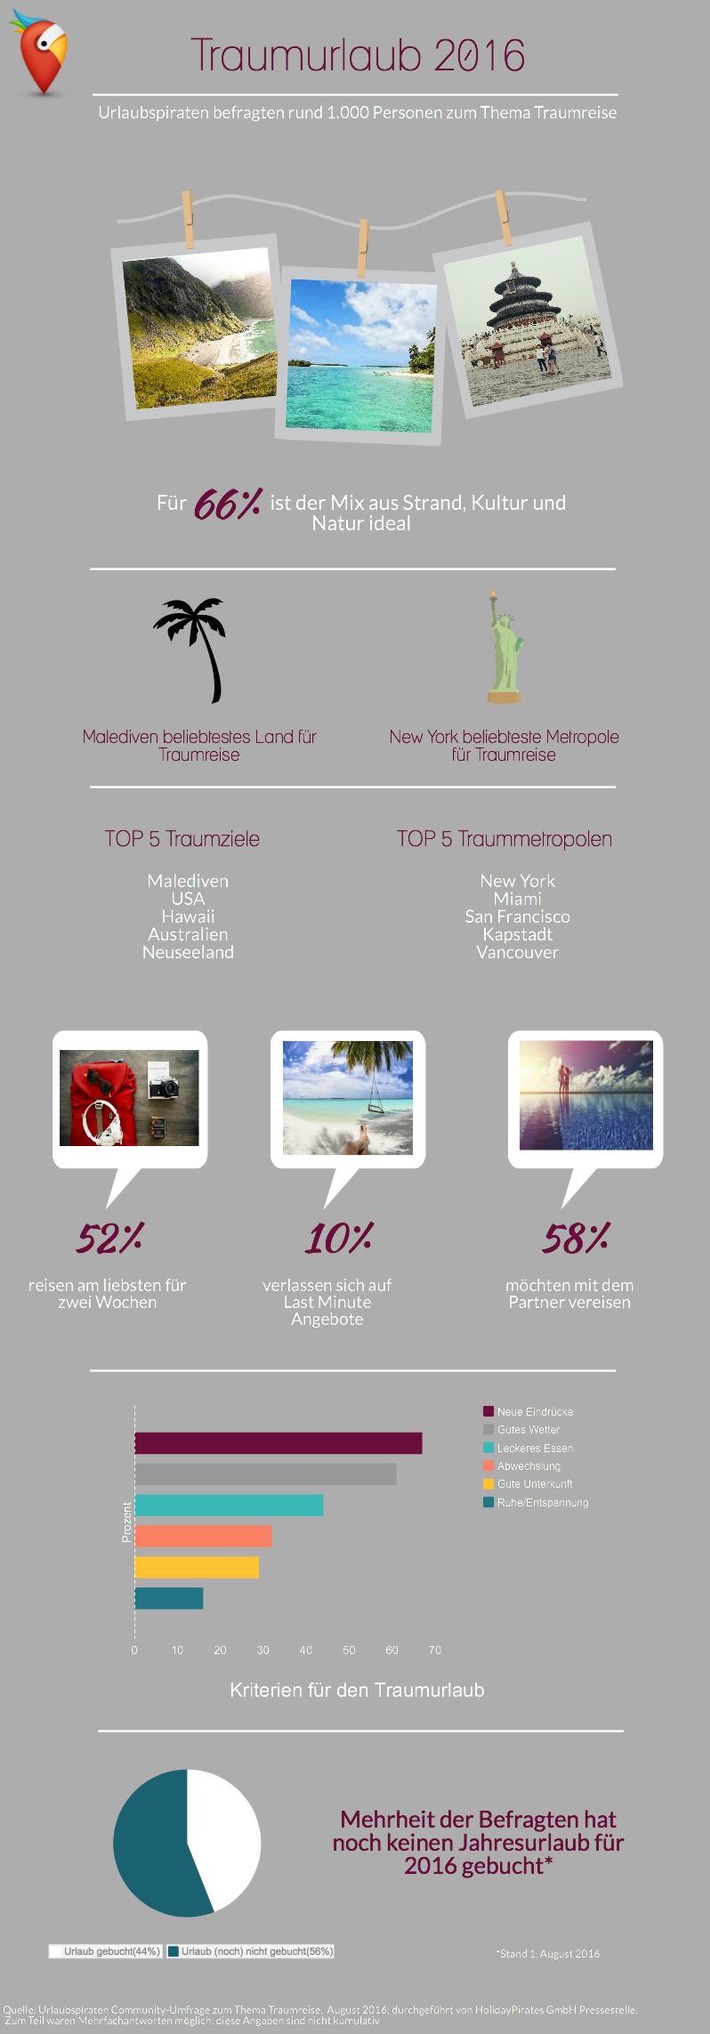 Urlaubspiraten-Umfrage zeigt: Zwei Wochen Malediven sind der ideale Traumurlaub